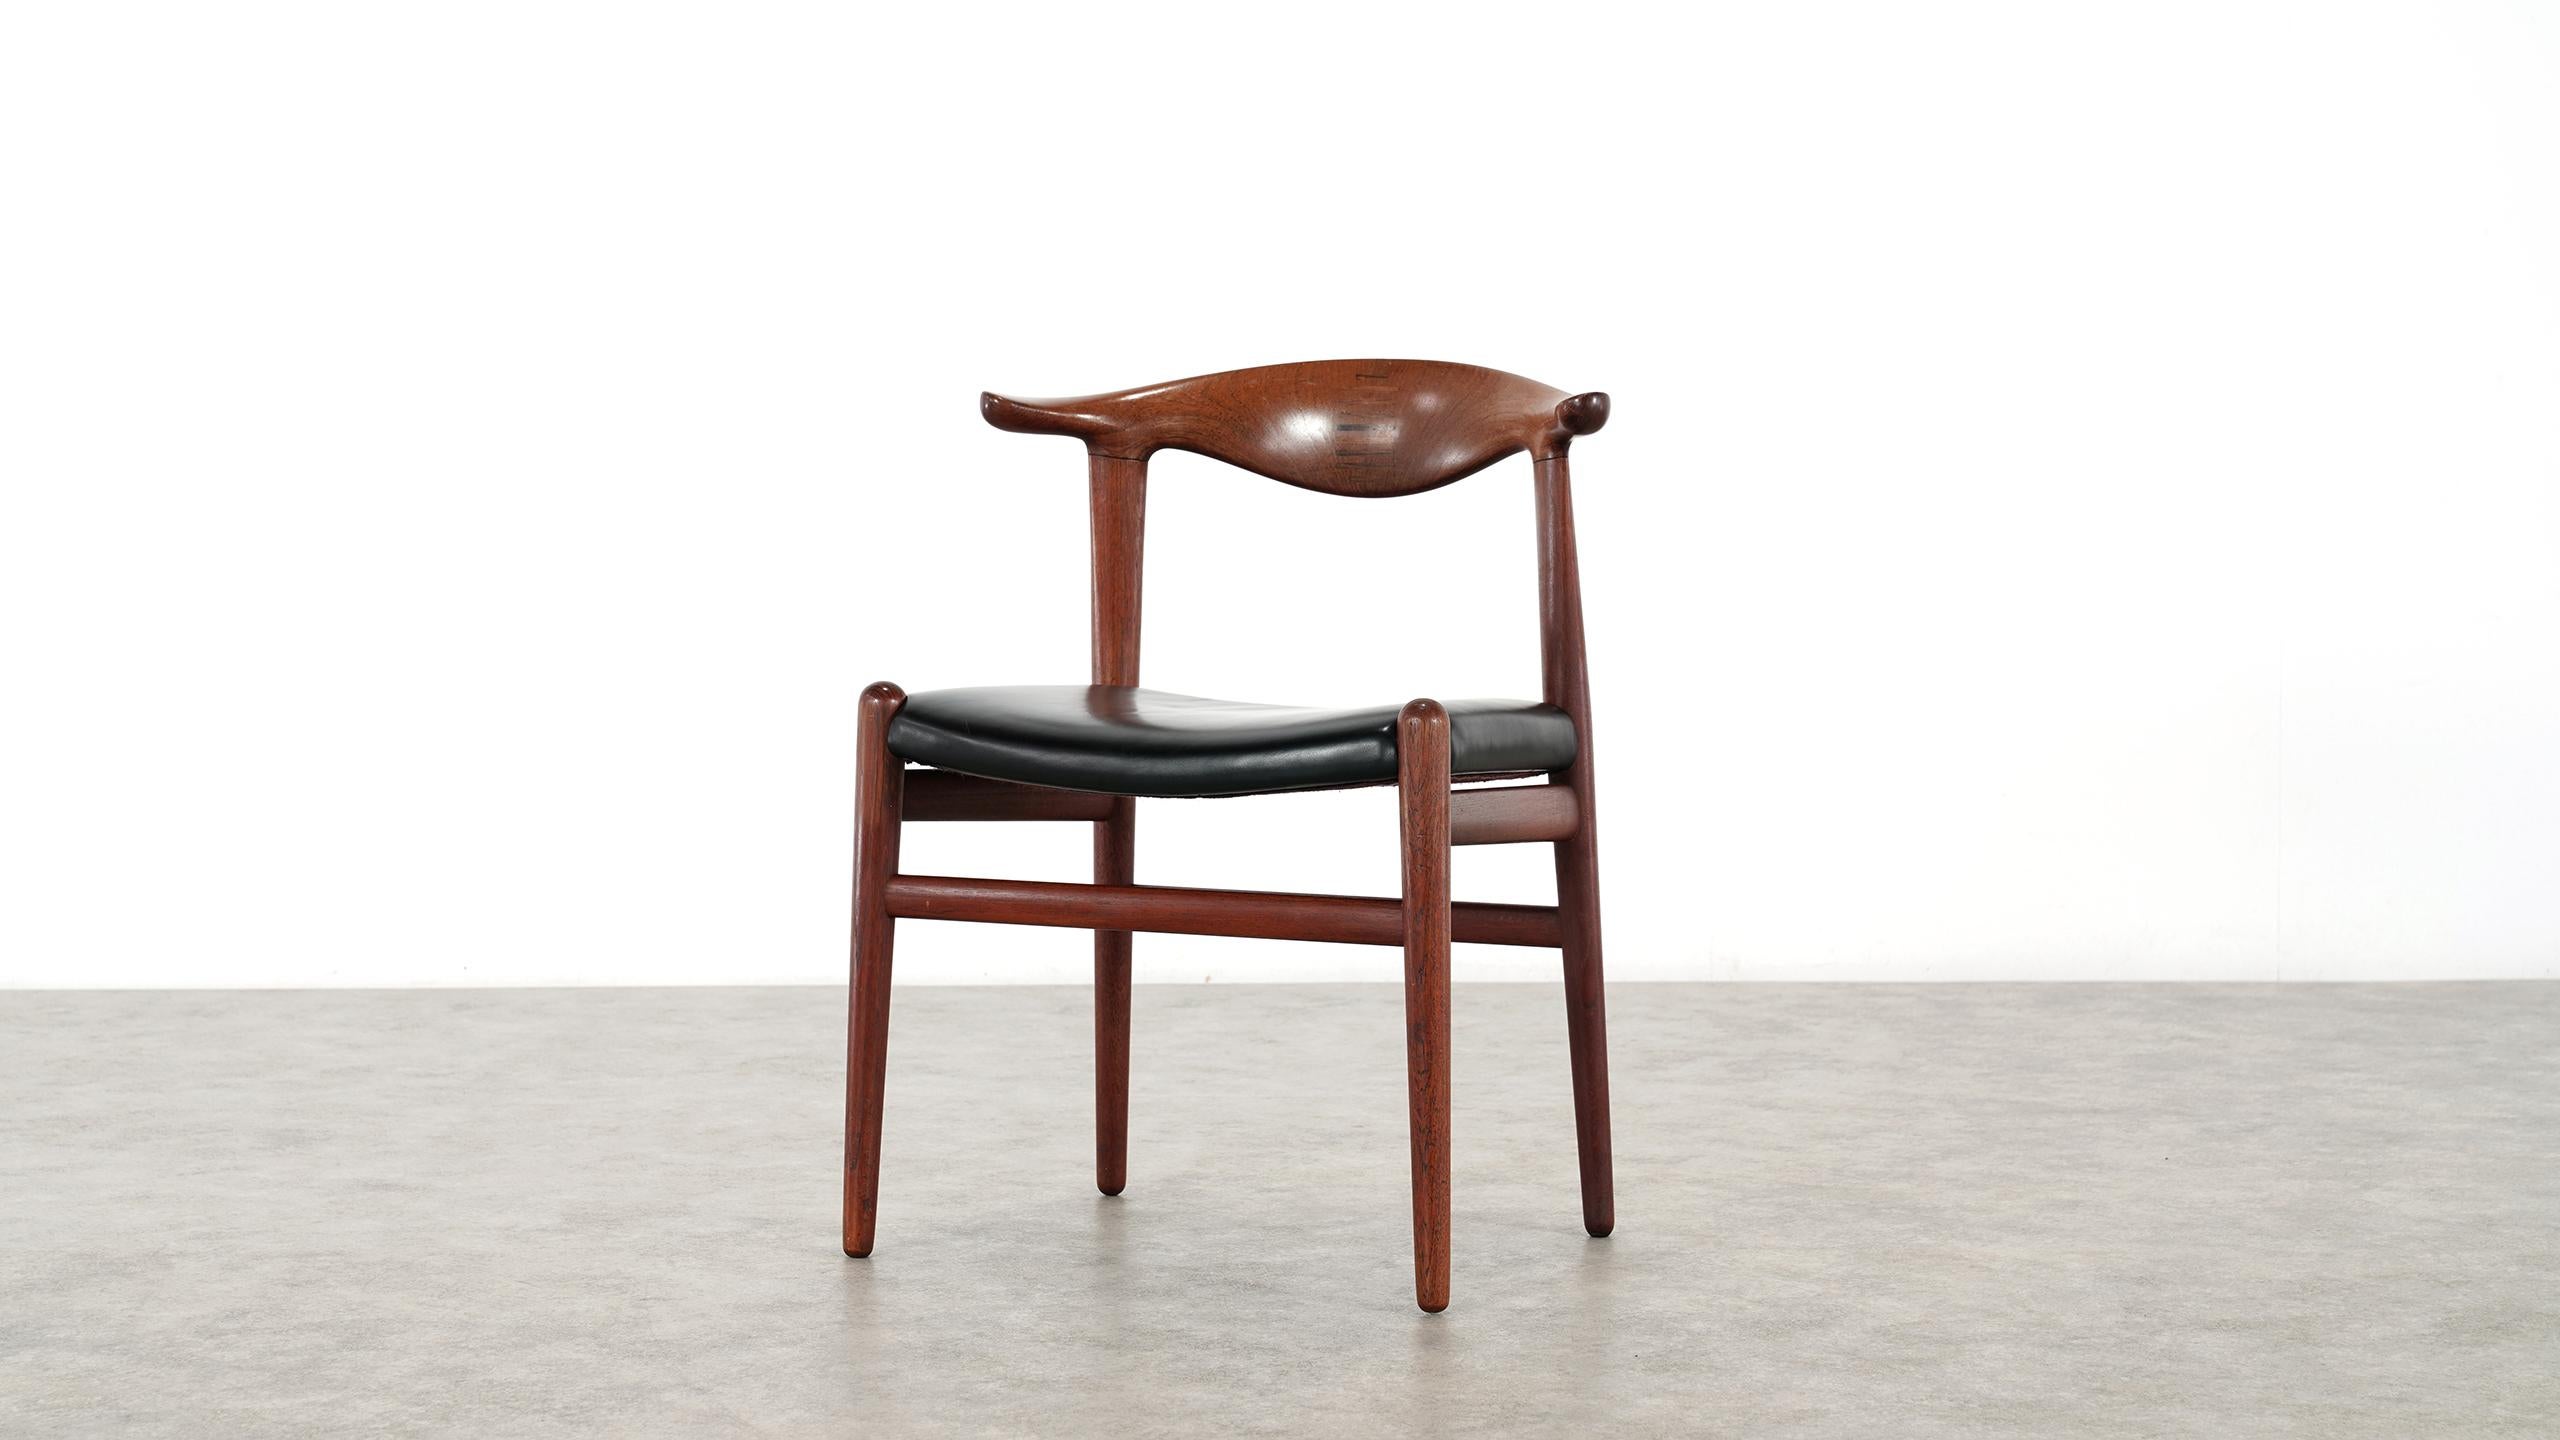 Scandinavian Modern Hans J. Wegner Rare Cowhorn Chair in Teak, 1952 for Johannes Hansen, Denmark